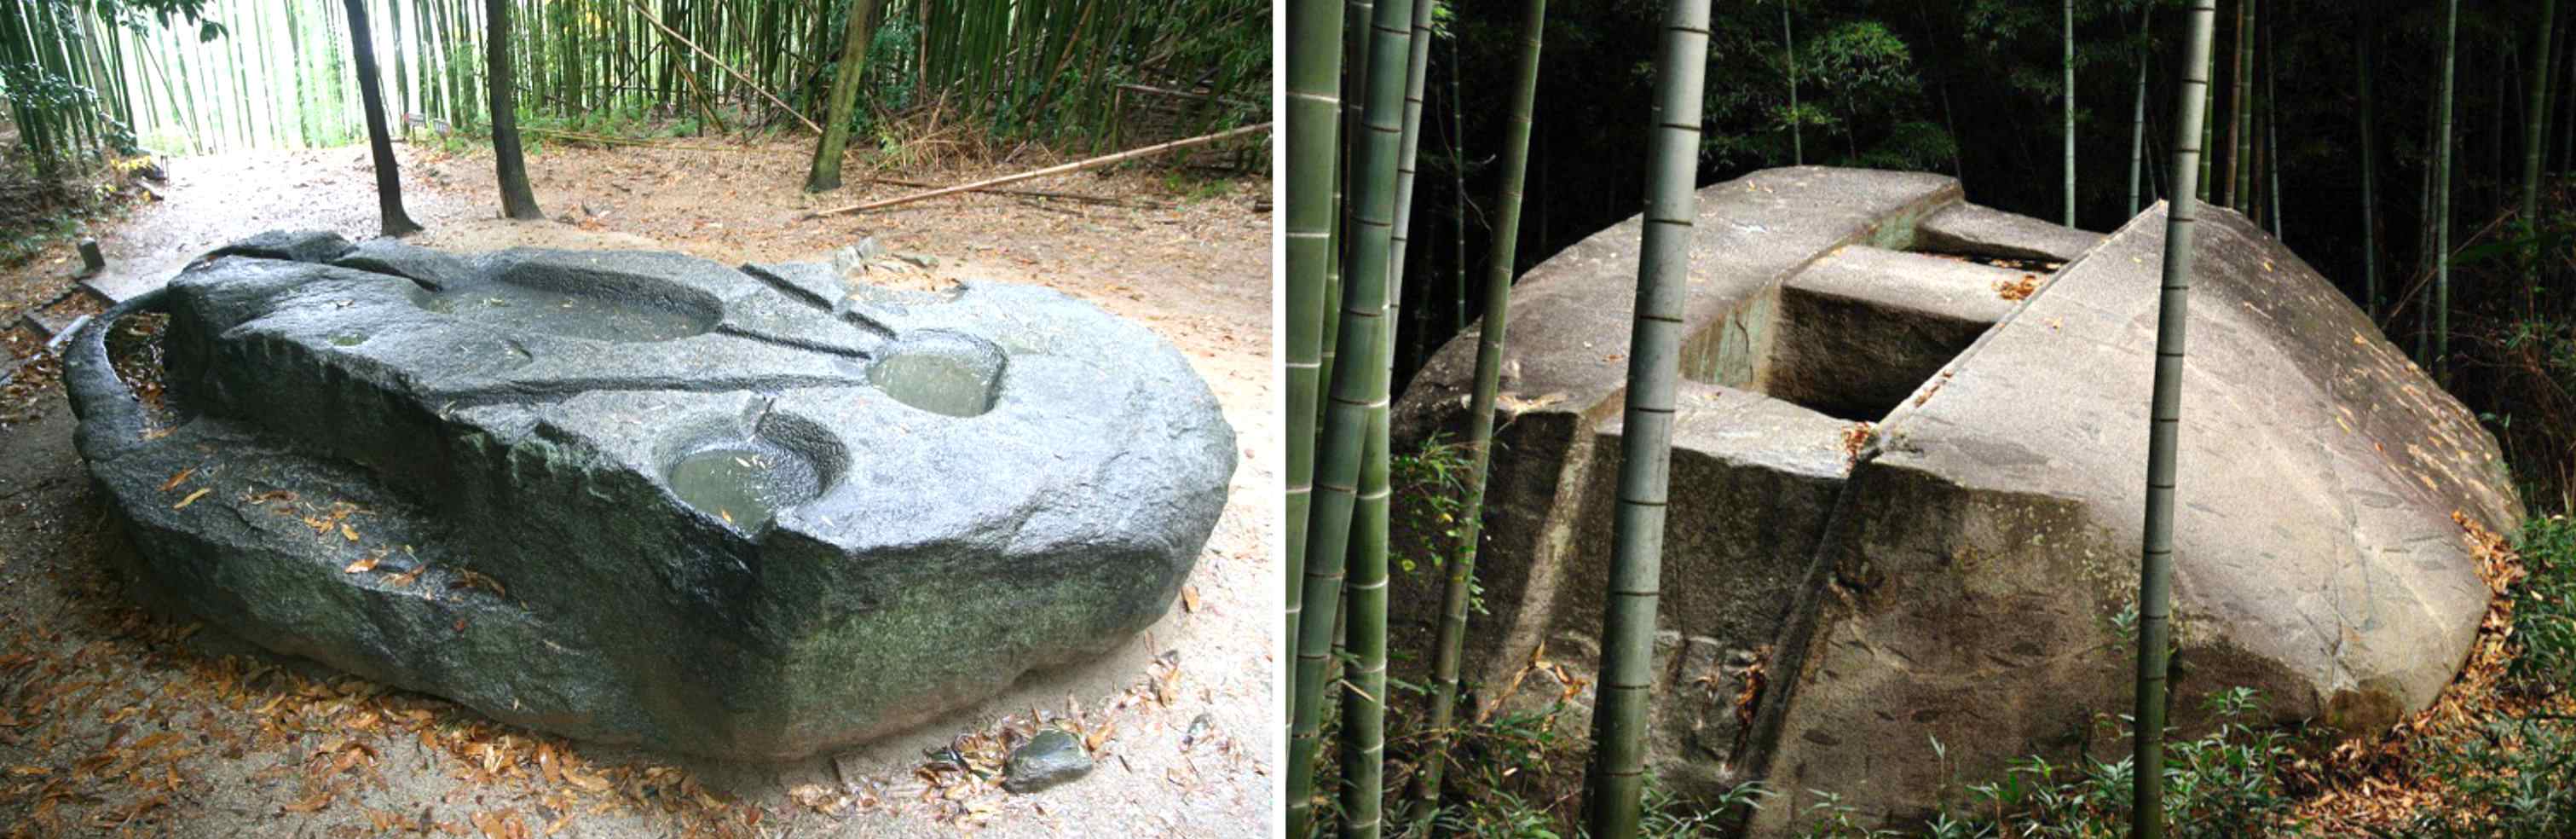 Mecanismos antiguos: ¿los gigantes construyeron este megalito japonés que pesaba cientos de toneladas? 3